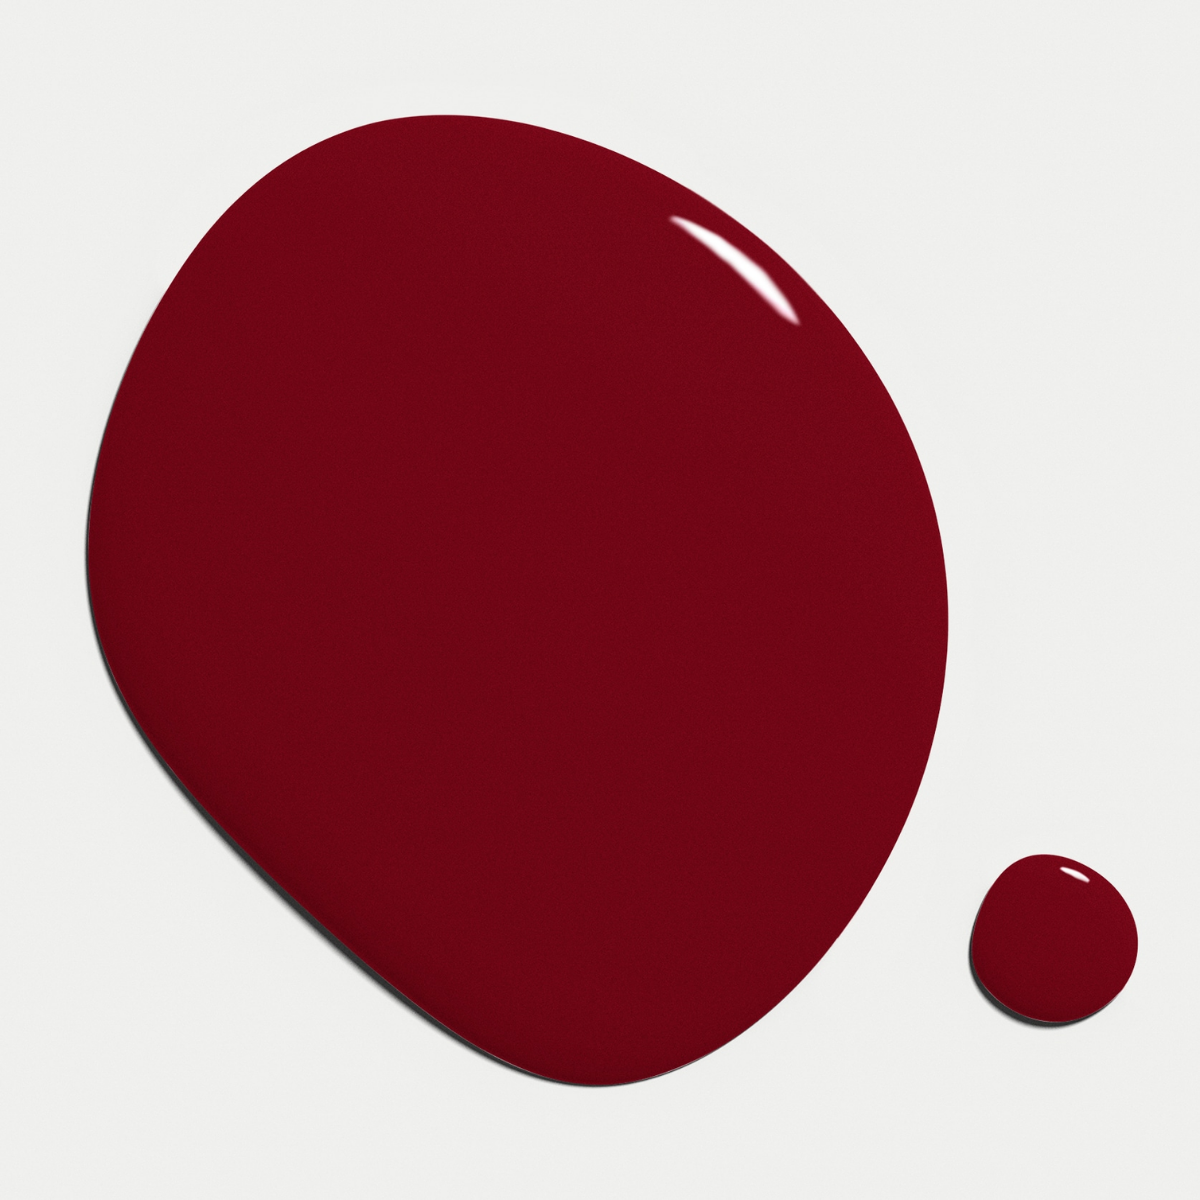 Nilens Jord - Nail Polish – Maroon Red